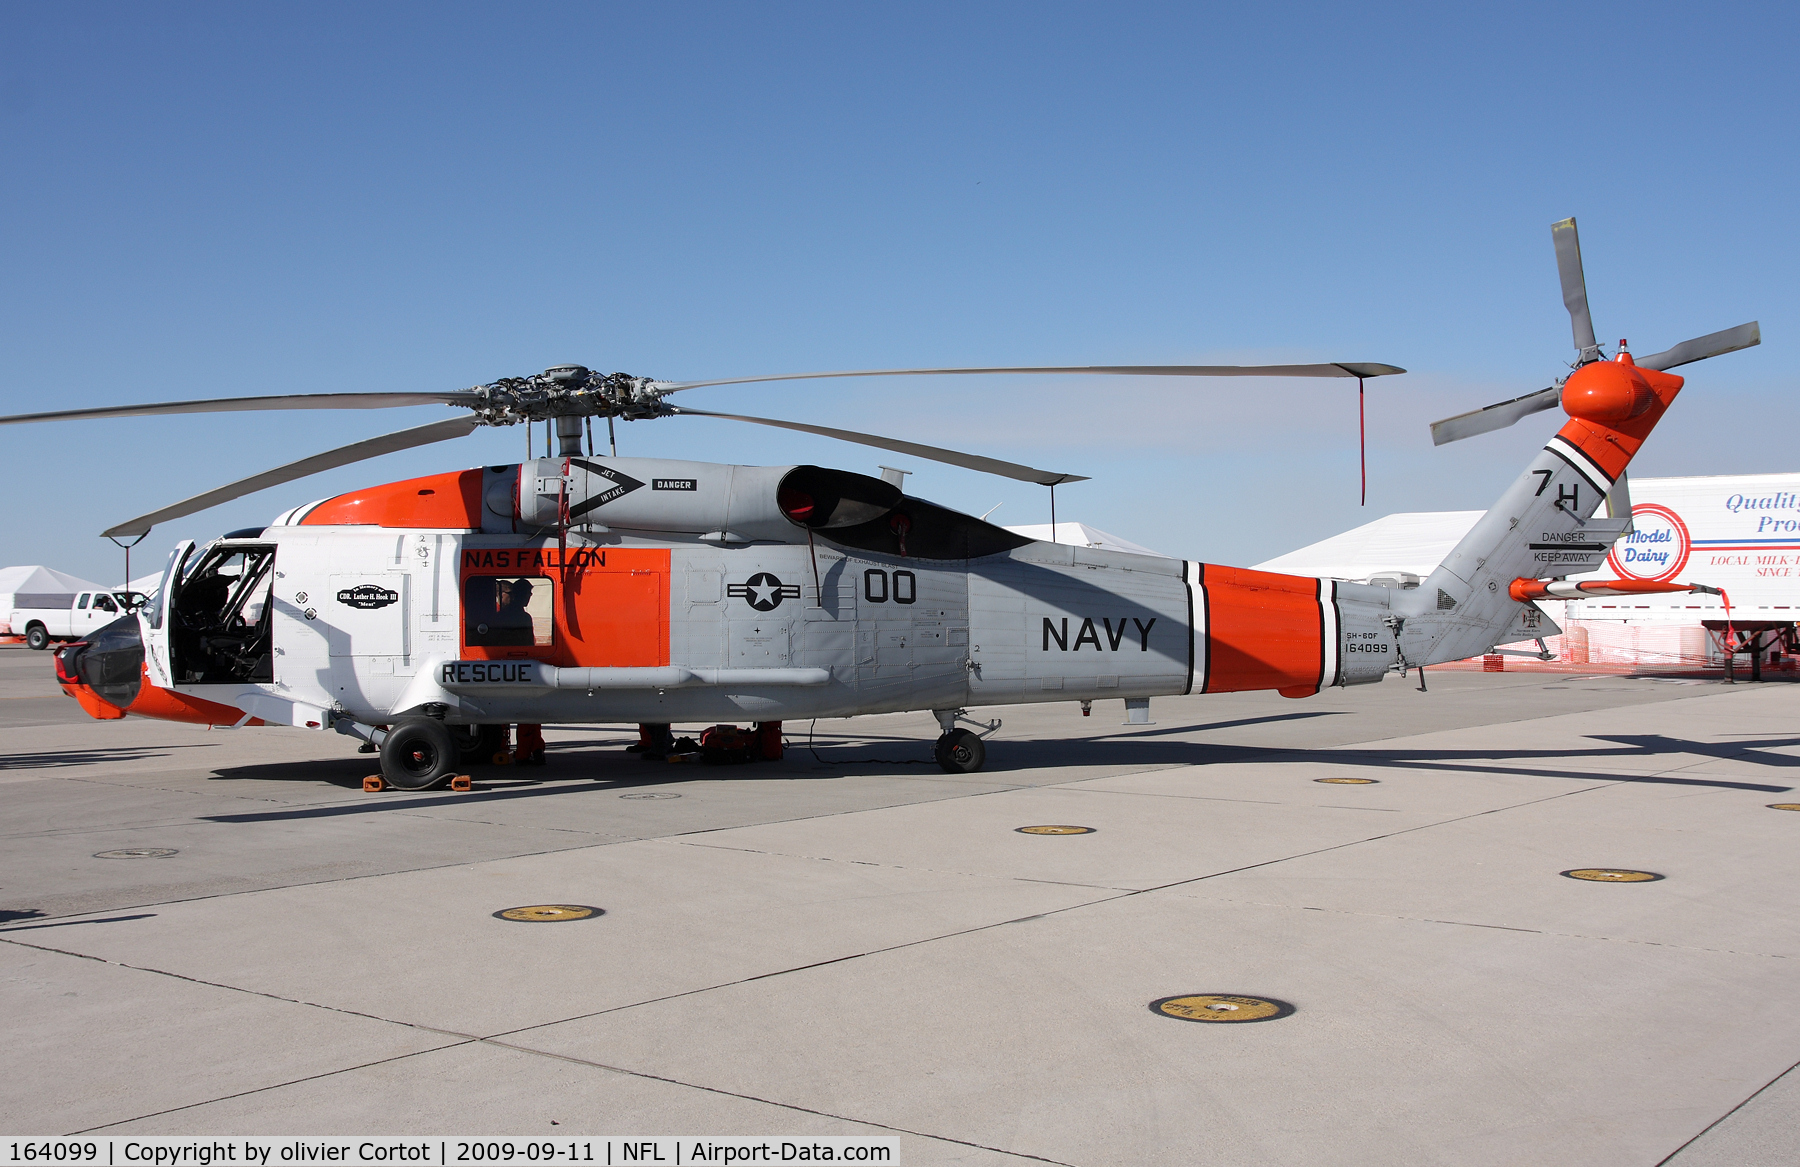 164099, Sikorsky SH-60F Ocean Hawk C/N 70.1578, Fallon airshow 2009